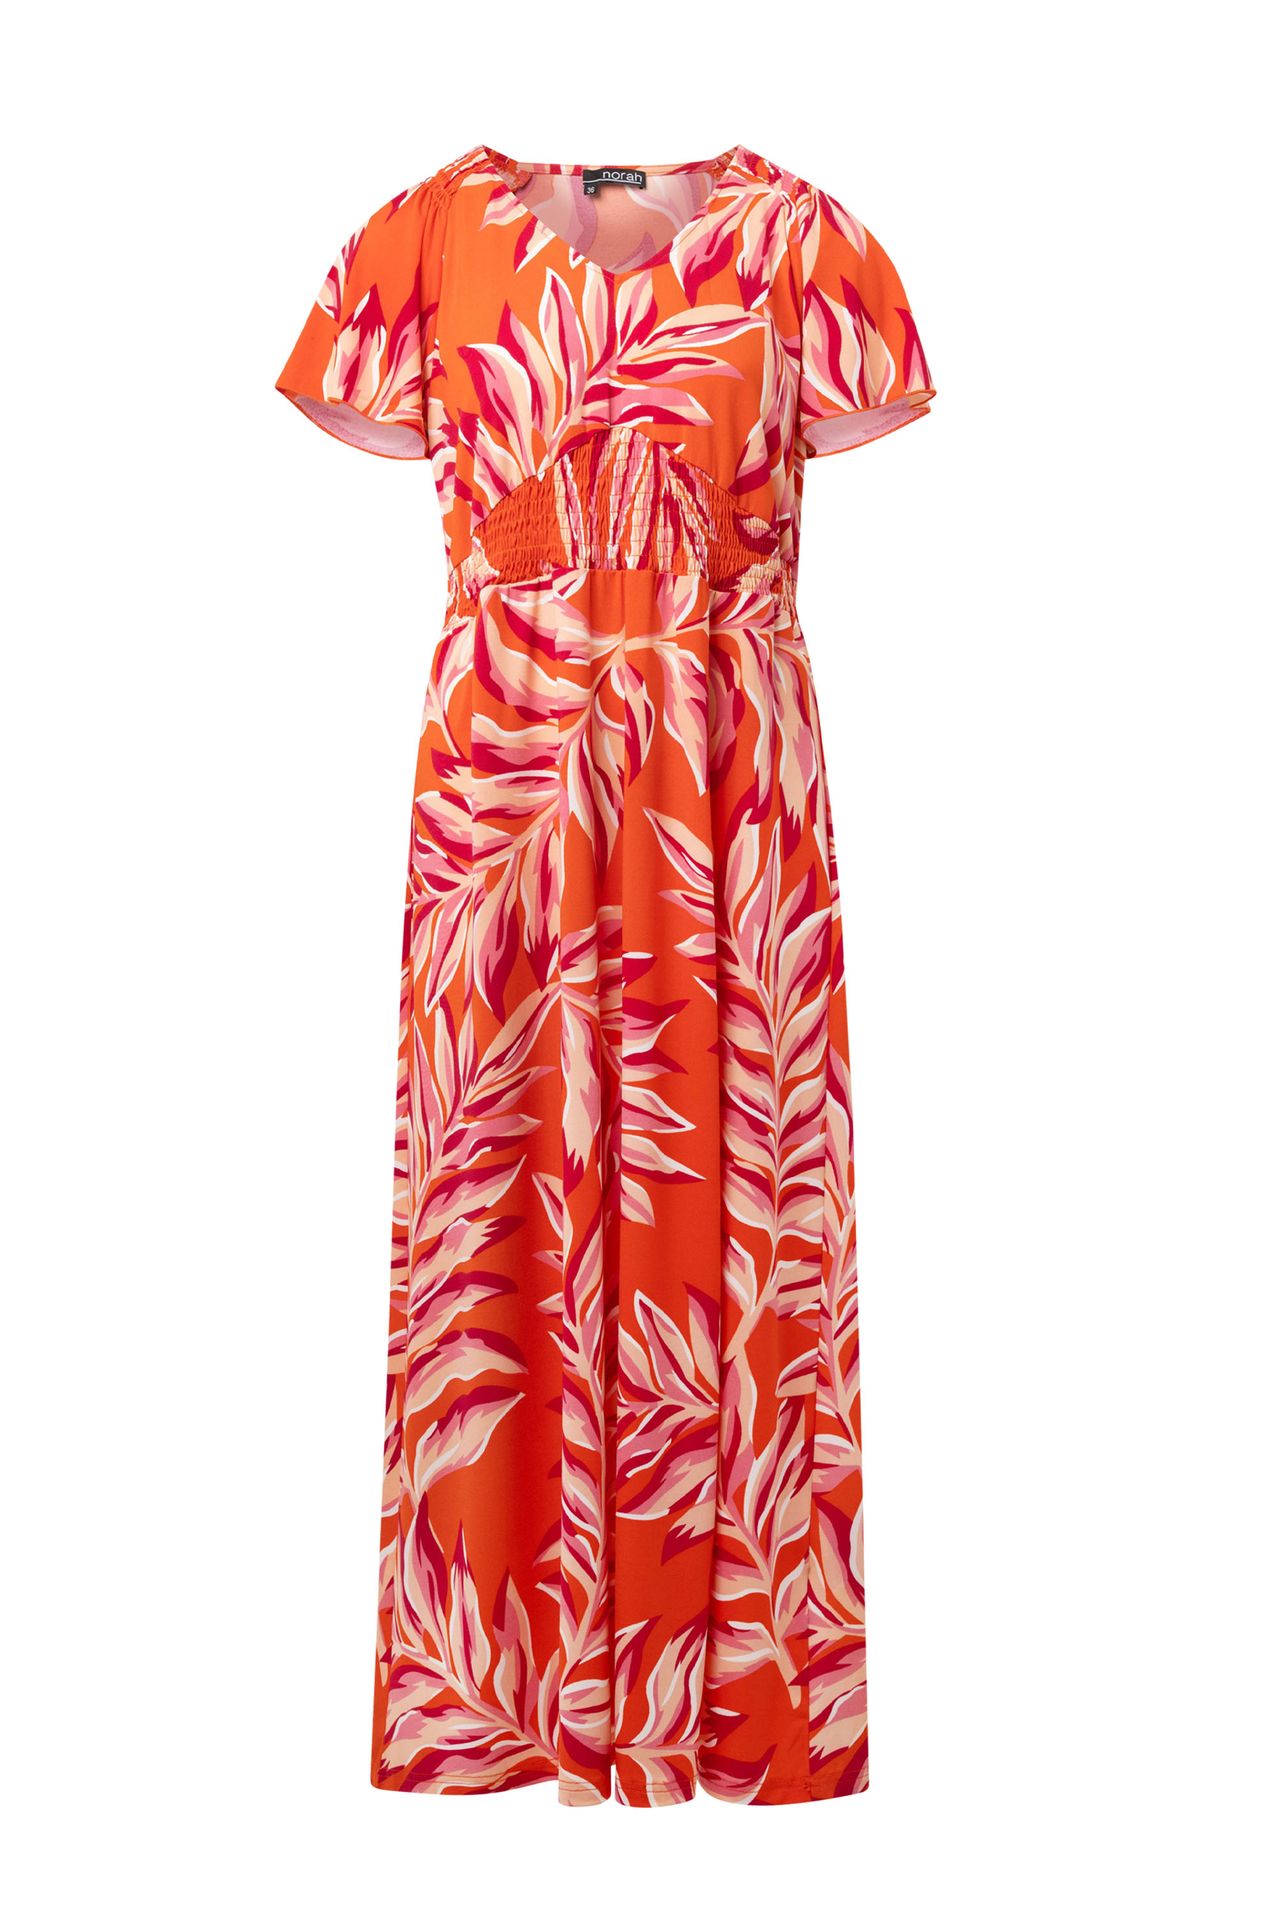 Norah Maxi jurk oranje orange/pink 213792-739